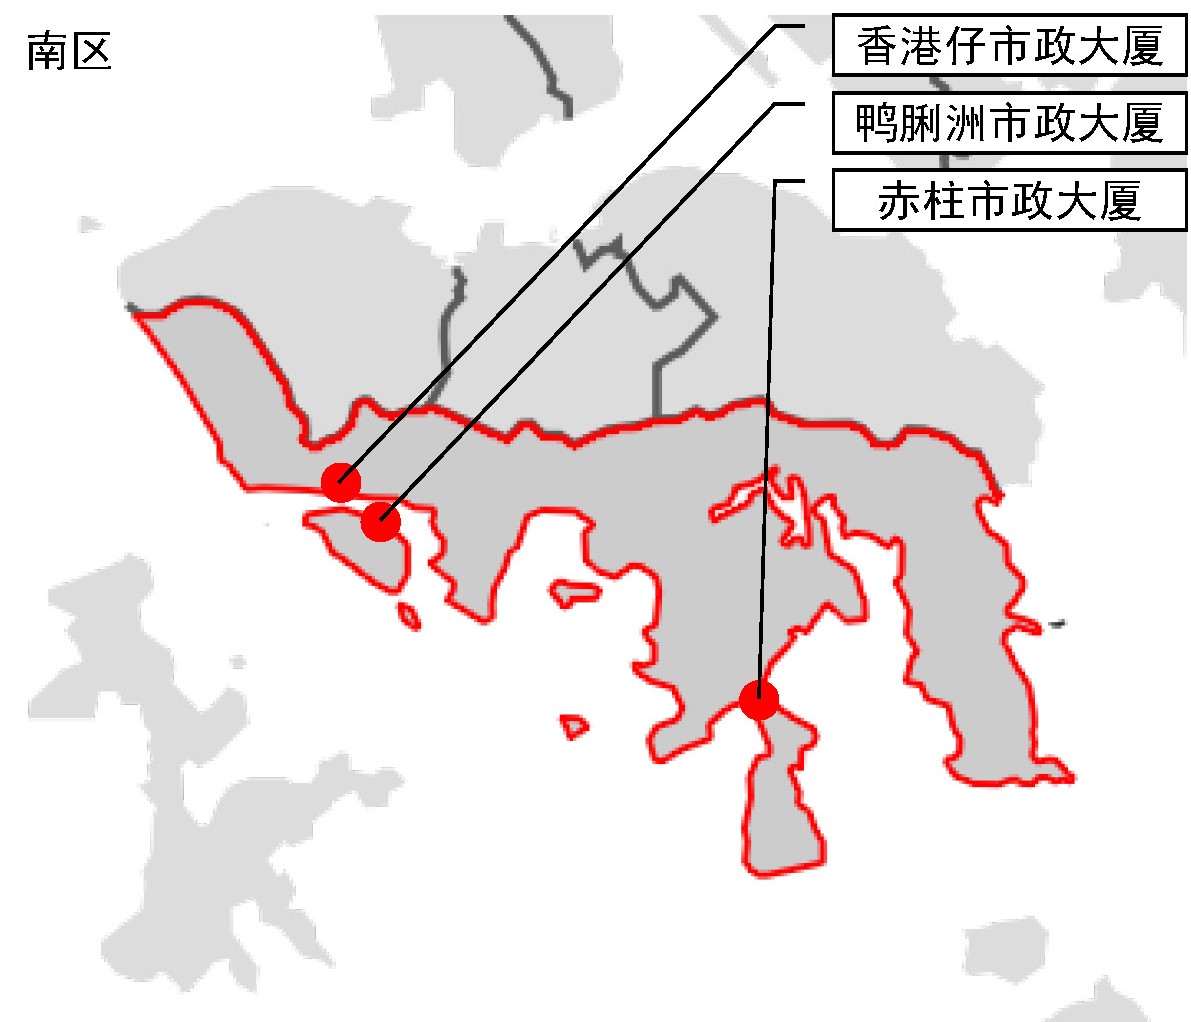 示意图：以香港十八区中的“南区”为例，为了便利居民在10分钟步行距离内享受完整公共服务，最终规划建设了三座市政大厦（香港仔市政大厦、鸭脷洲市政大厦、赤柱市政大厦）。